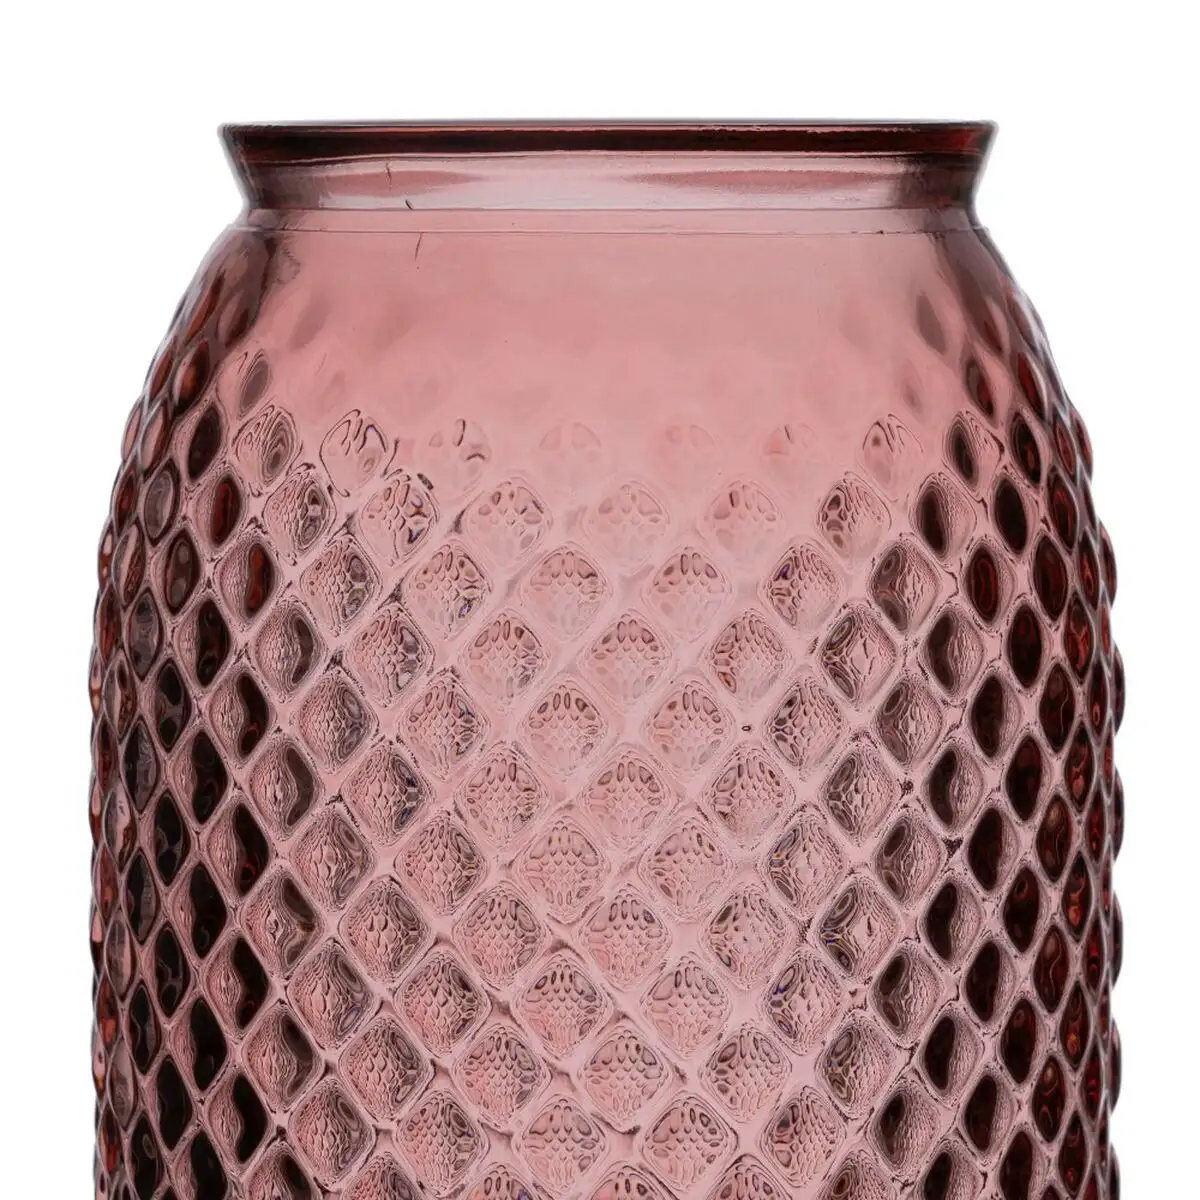 Vase 15 x 15 x 45 cm rose verre recycle_8687. Bienvenue chez DIAYTAR SENEGAL - Où Choisir est un Voyage. Plongez dans notre plateforme en ligne pour trouver des produits qui ajoutent de la couleur et de la texture à votre quotidien.